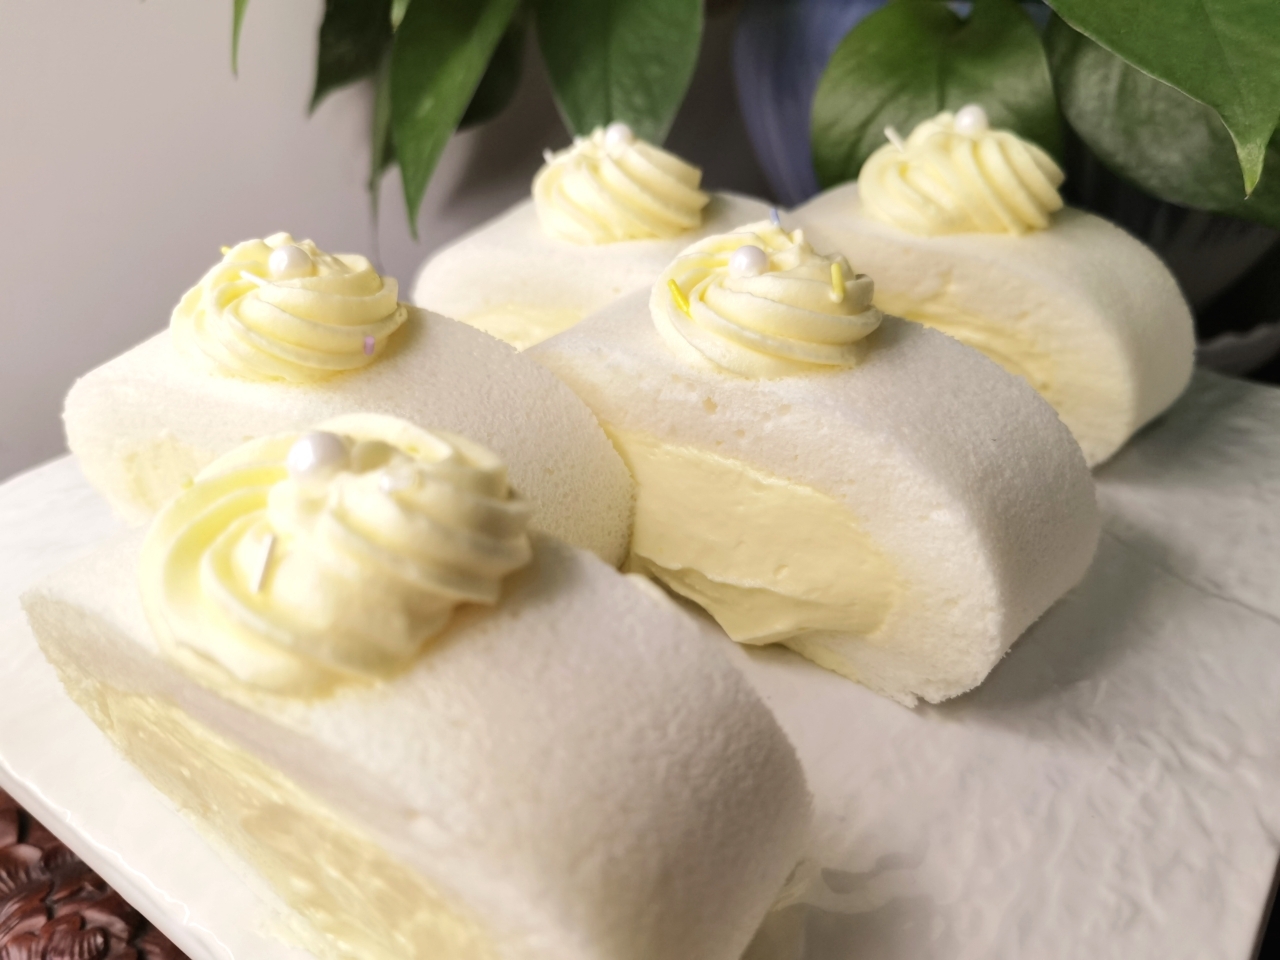 柠檬冰淇淋夹心天使蛋糕卷❗️清新柔滑❗️超好吃